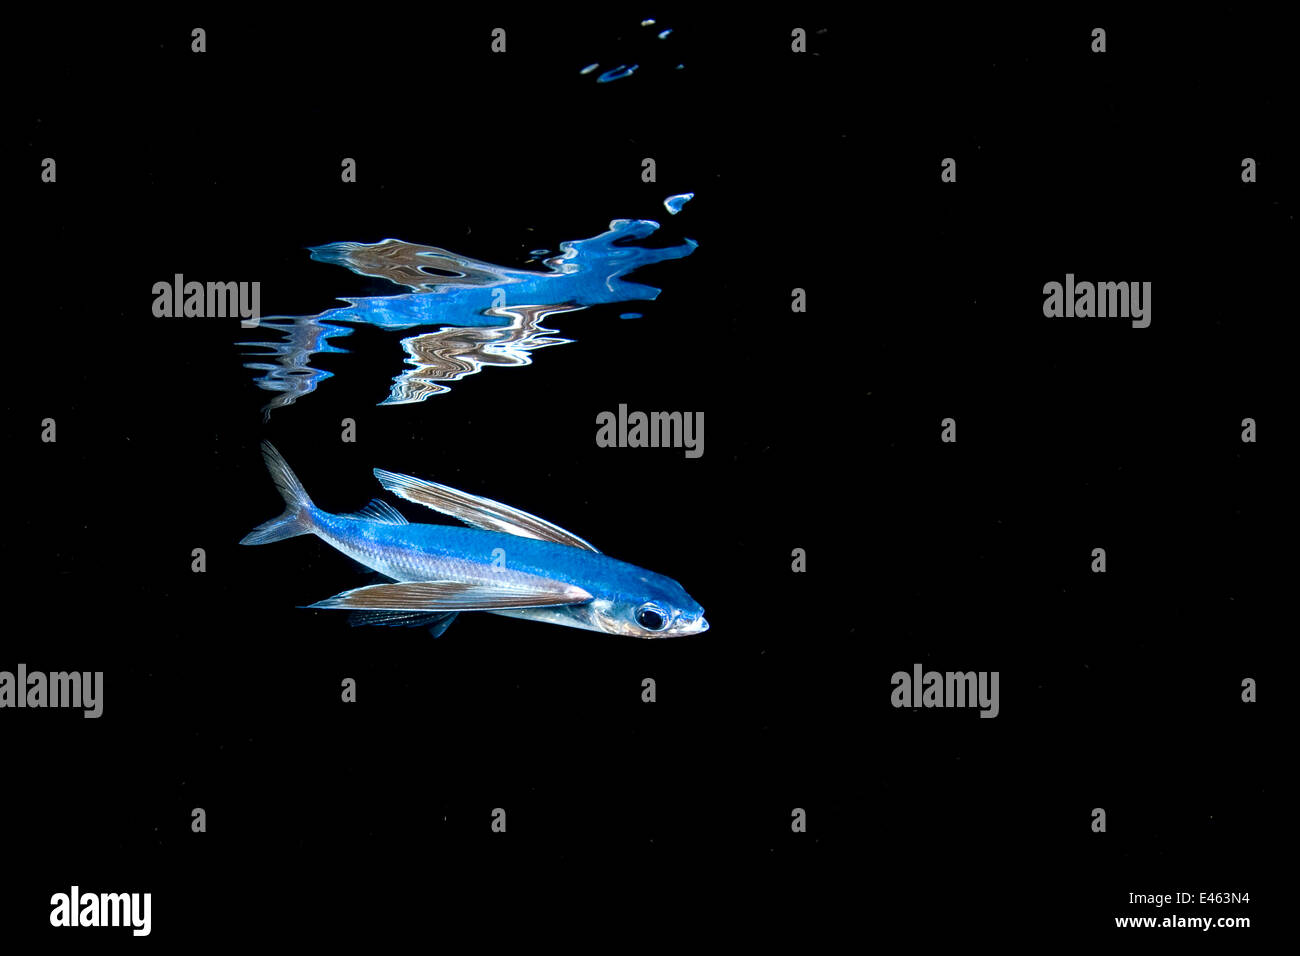 Los peces voladores (Hirundichthys Mirrorwing speculiger) reflejados y nadar por debajo de la superficie en la noche, entre las Bahamas y la Corriente del Golfo, el Atlántico occidental (Florida, Estados Unidos. Foto de stock